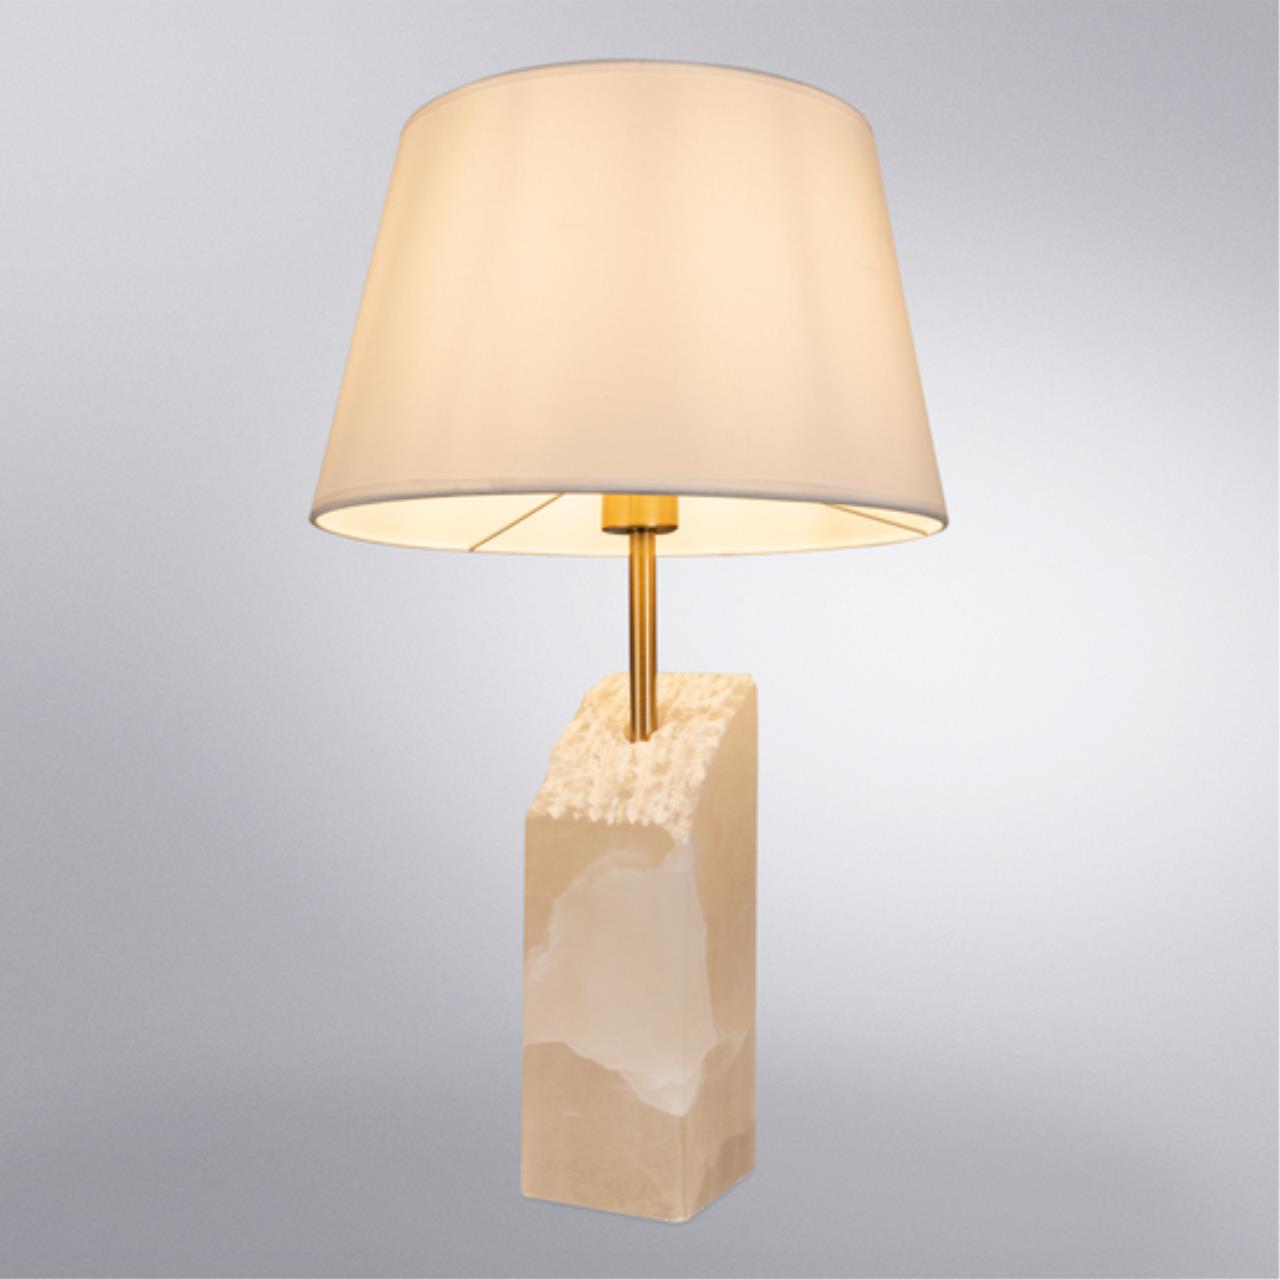 Интерьерная настольная лампа Arte lamp A4028LT-1PB СВЕТИЛЬНИК НАСТОЛЬНЫЙ